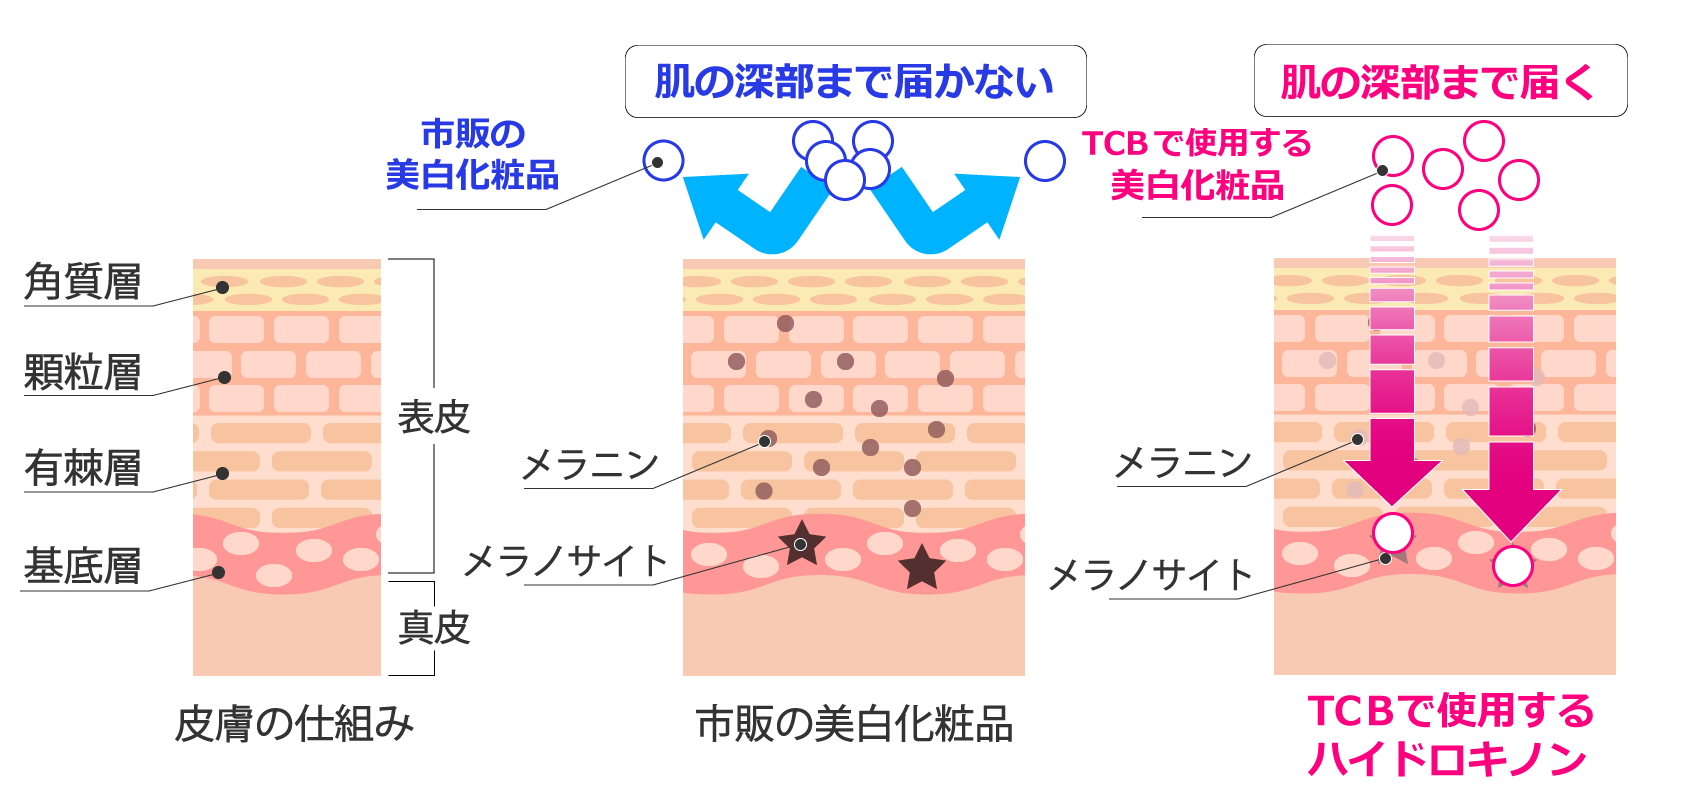 乳輪 乳頭の黒ずみ除去 最適な治療法で黒ずんだ乳首をピンク色に 美容整形なら東京中央美容外科 Tcb公式